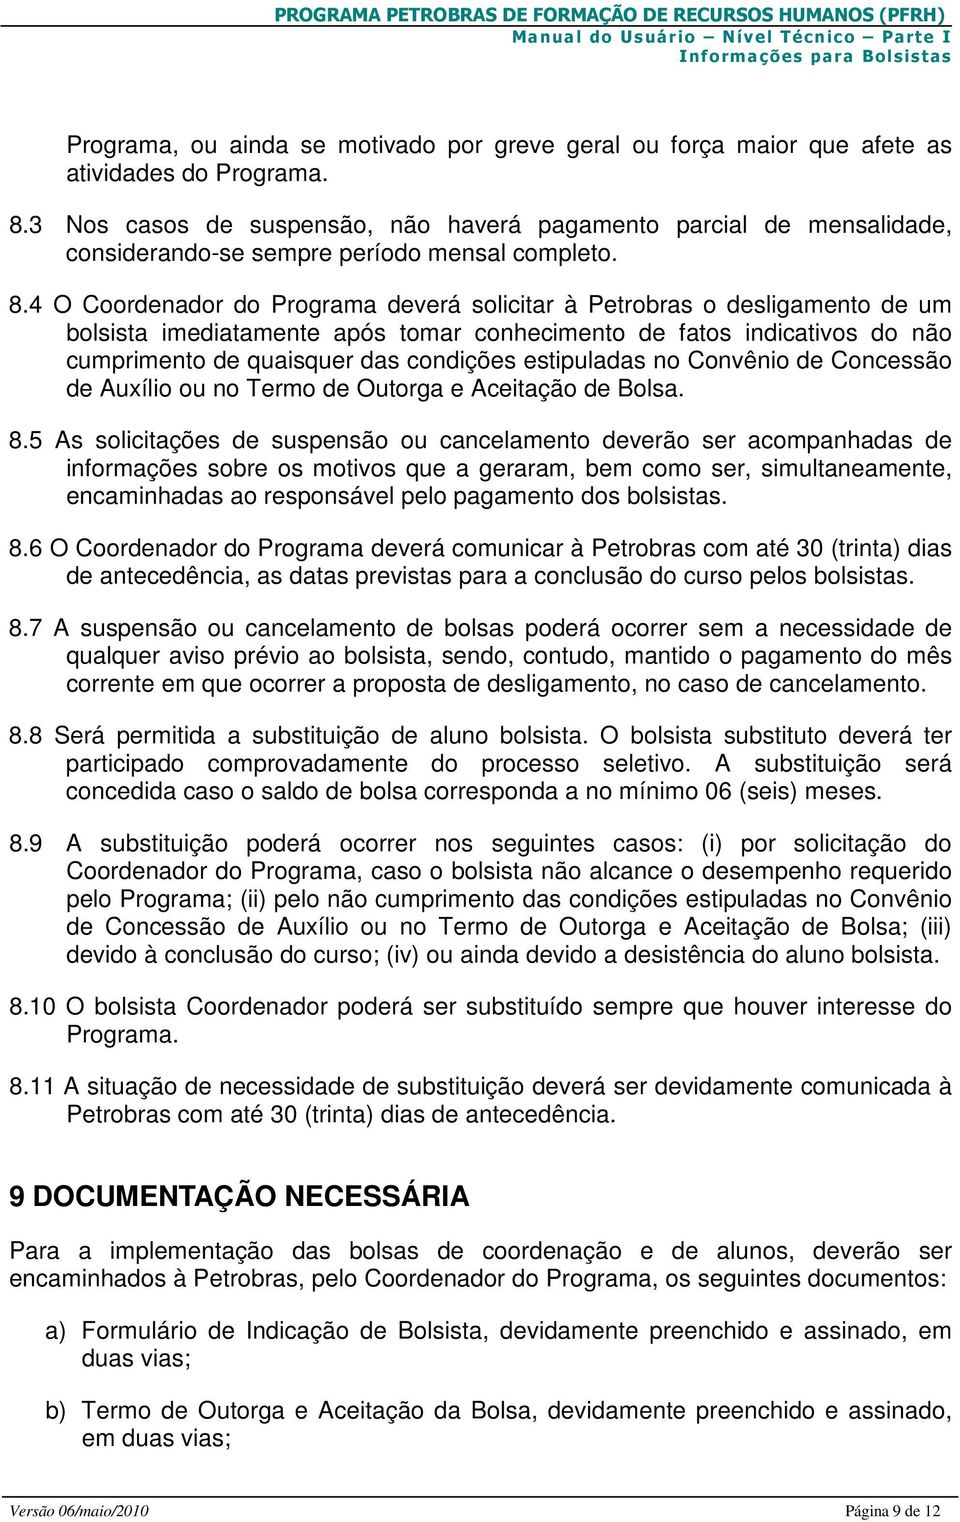 4 O Coordenador do Programa deverá solicitar à Petrobras o desligamento de um bolsista imediatamente após tomar conhecimento de fatos indicativos do não cumprimento de quaisquer das condições